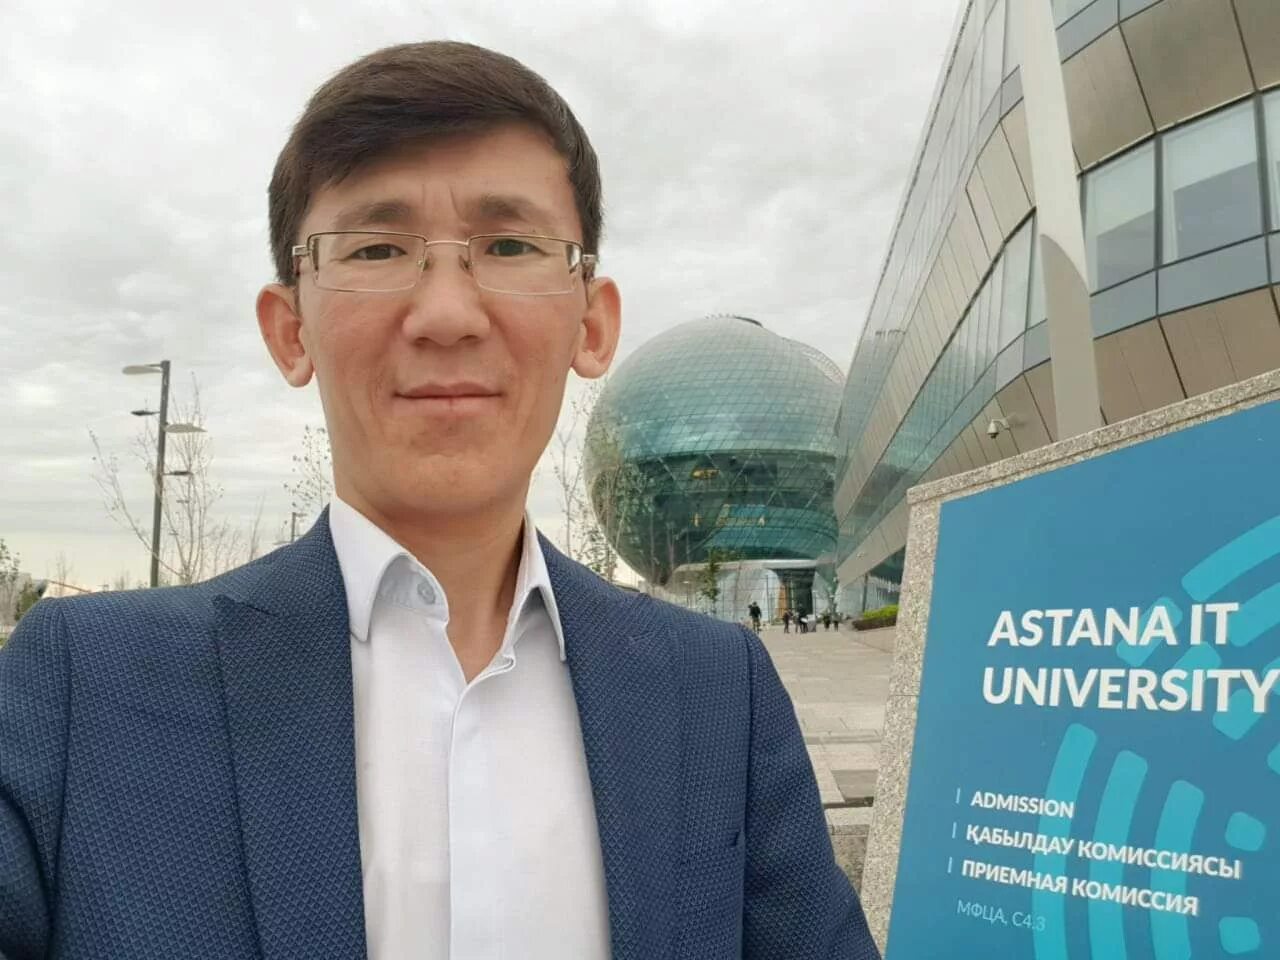 Астана it университет.